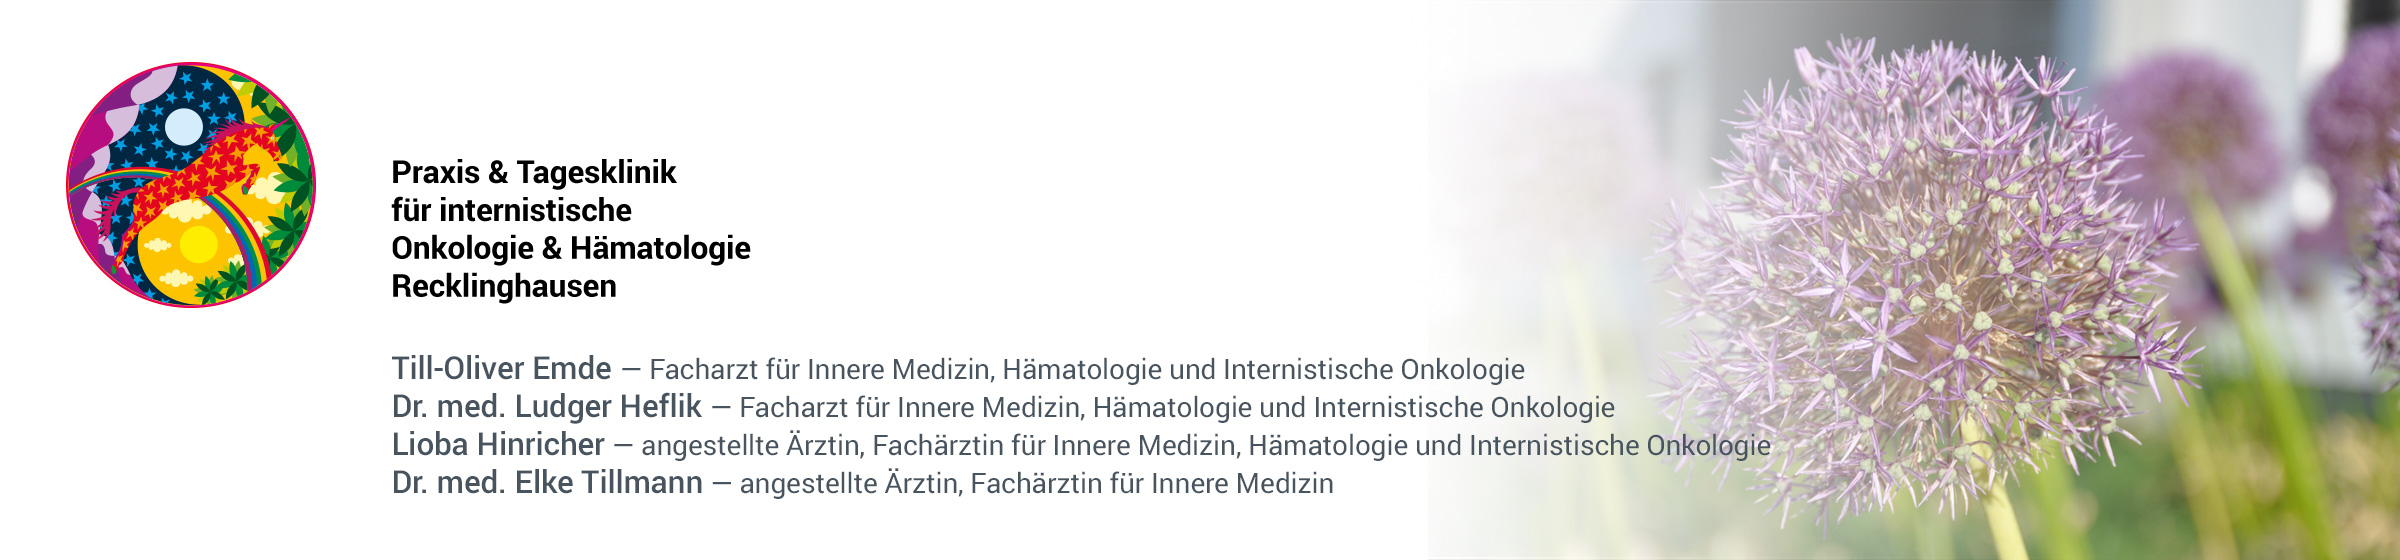 Praxis & Tagesklinik für internistische Onkologie & Hämatologie Recklinghausen